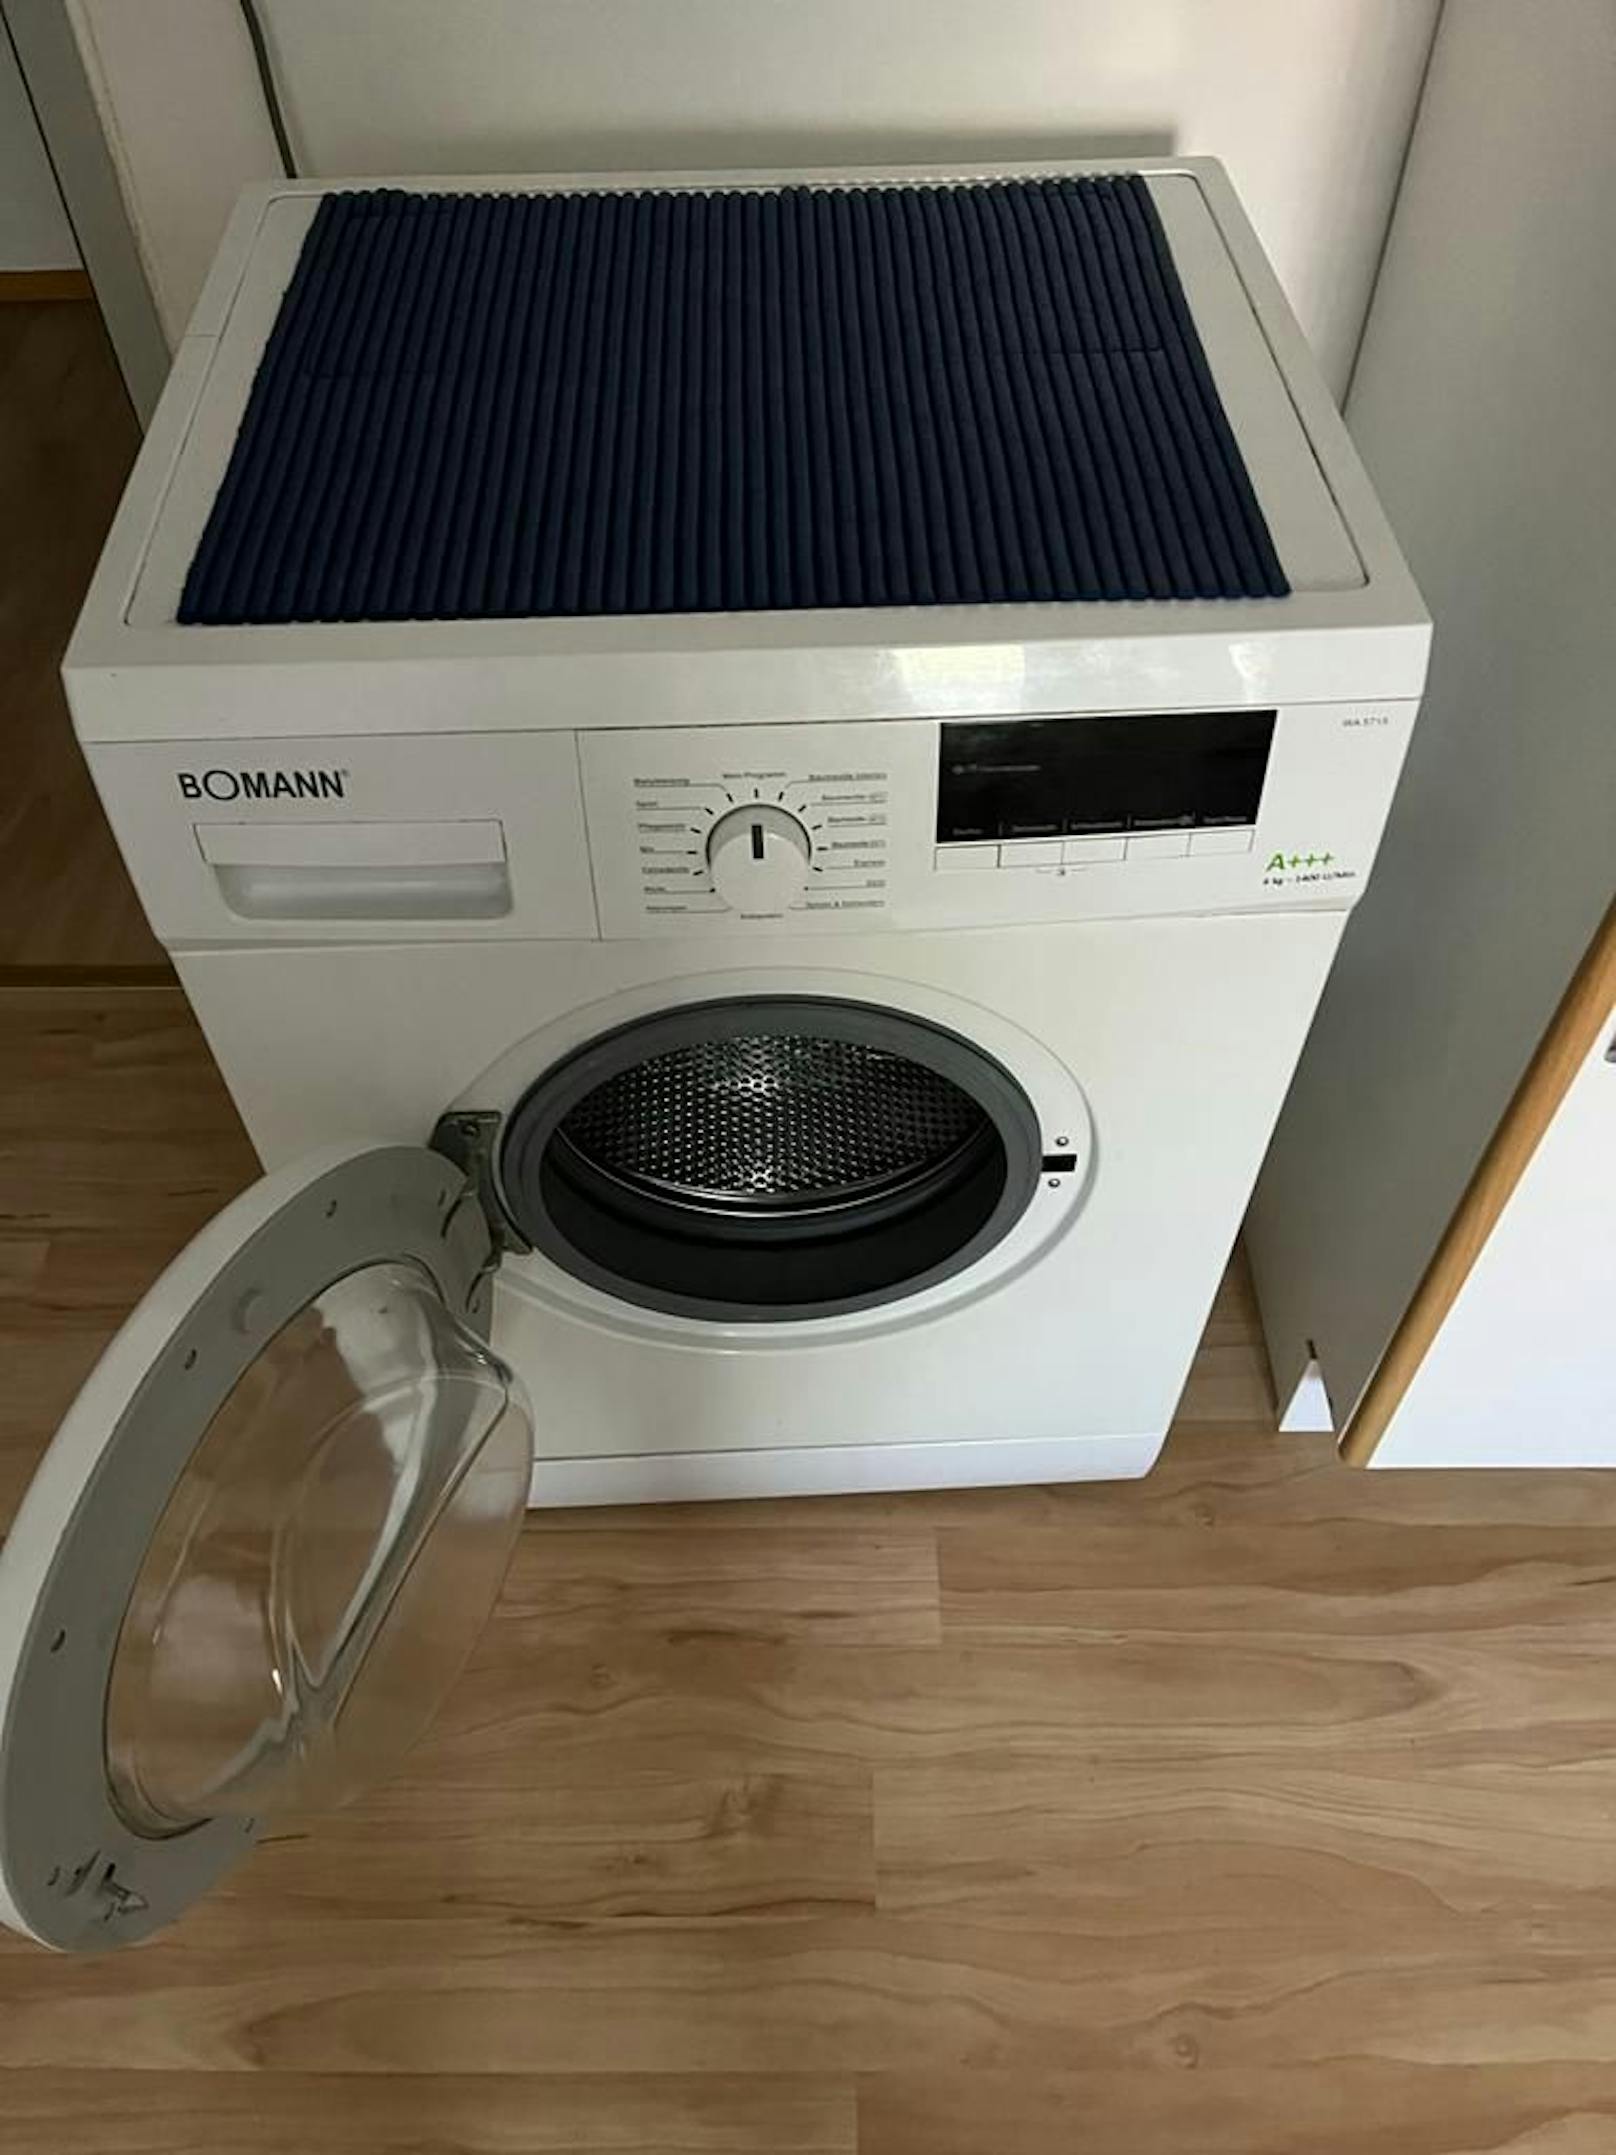 Die Waschmaschine, gekauft am 14.4. 2017 - pünktlich zum Garantieablauf Ende April die erste Fehlermeldung